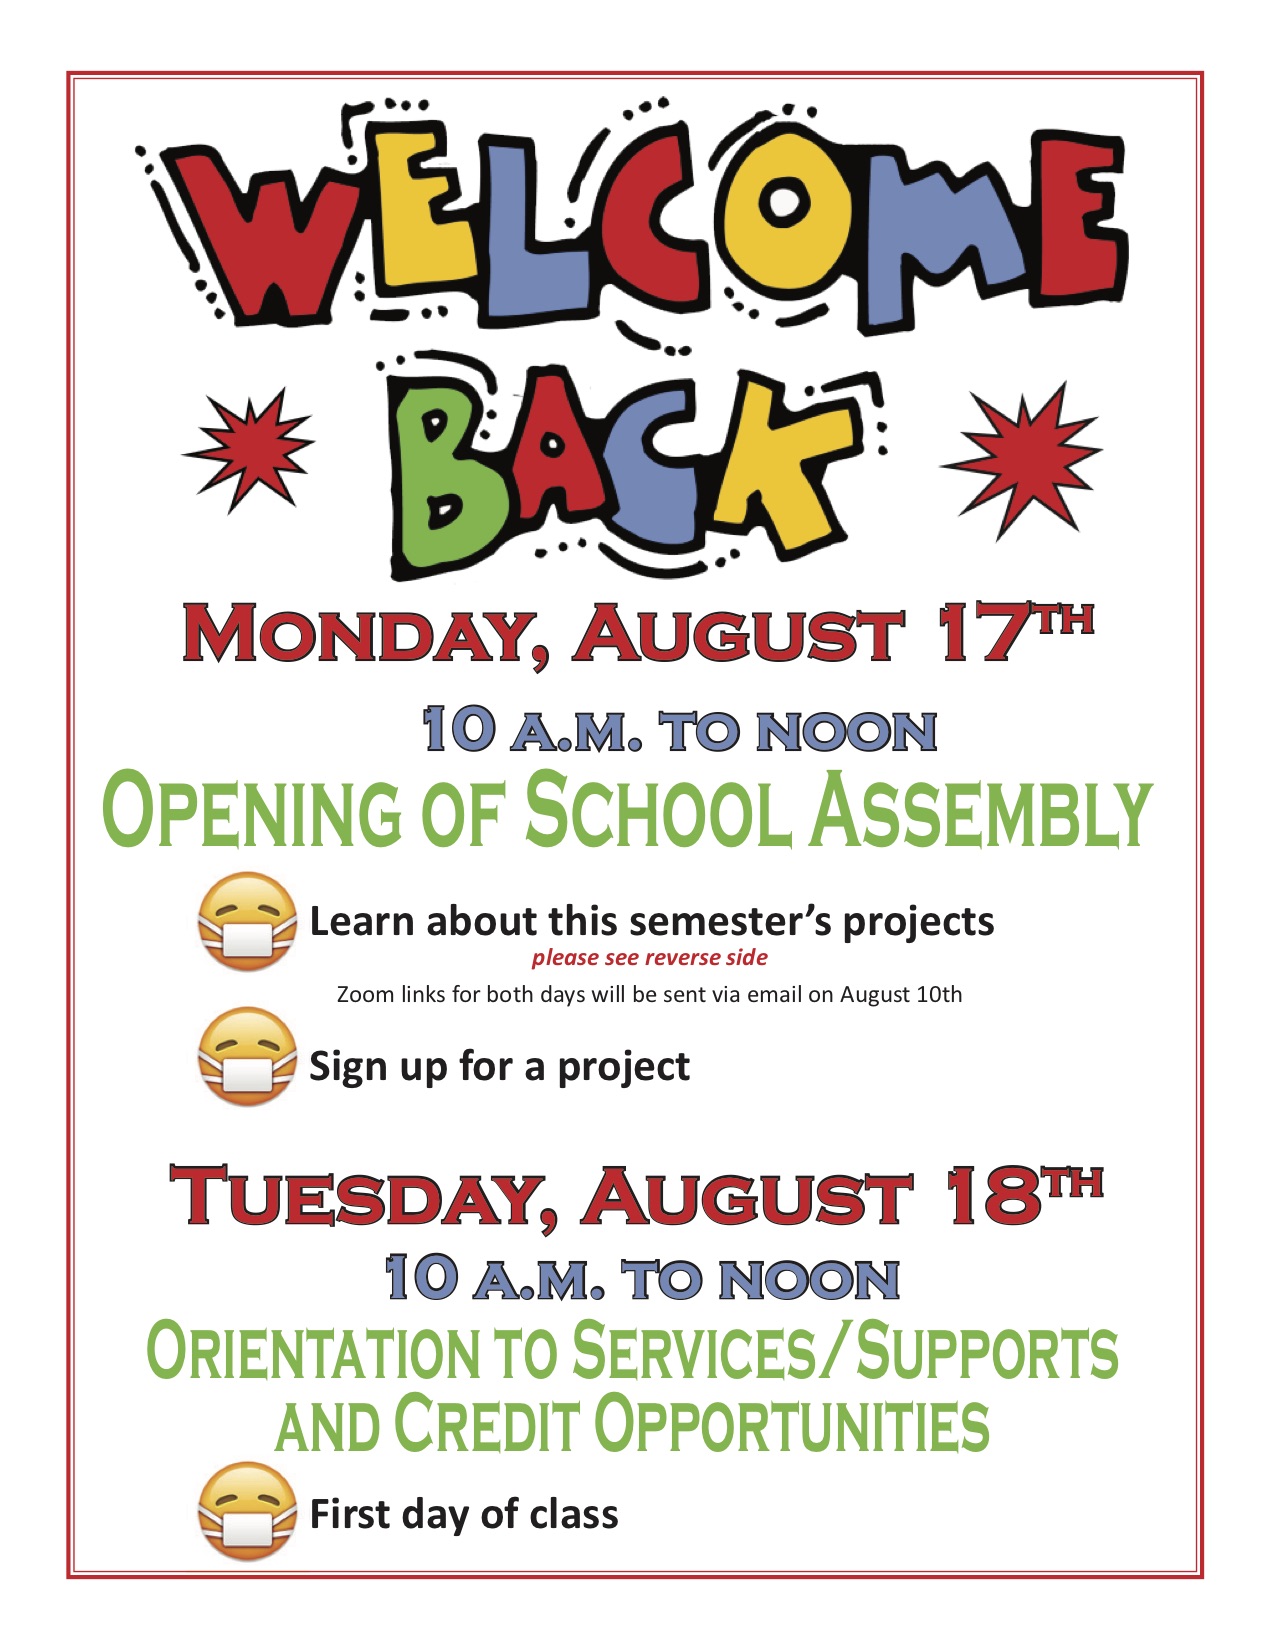 School starts on Monday, August 17! SFUSD